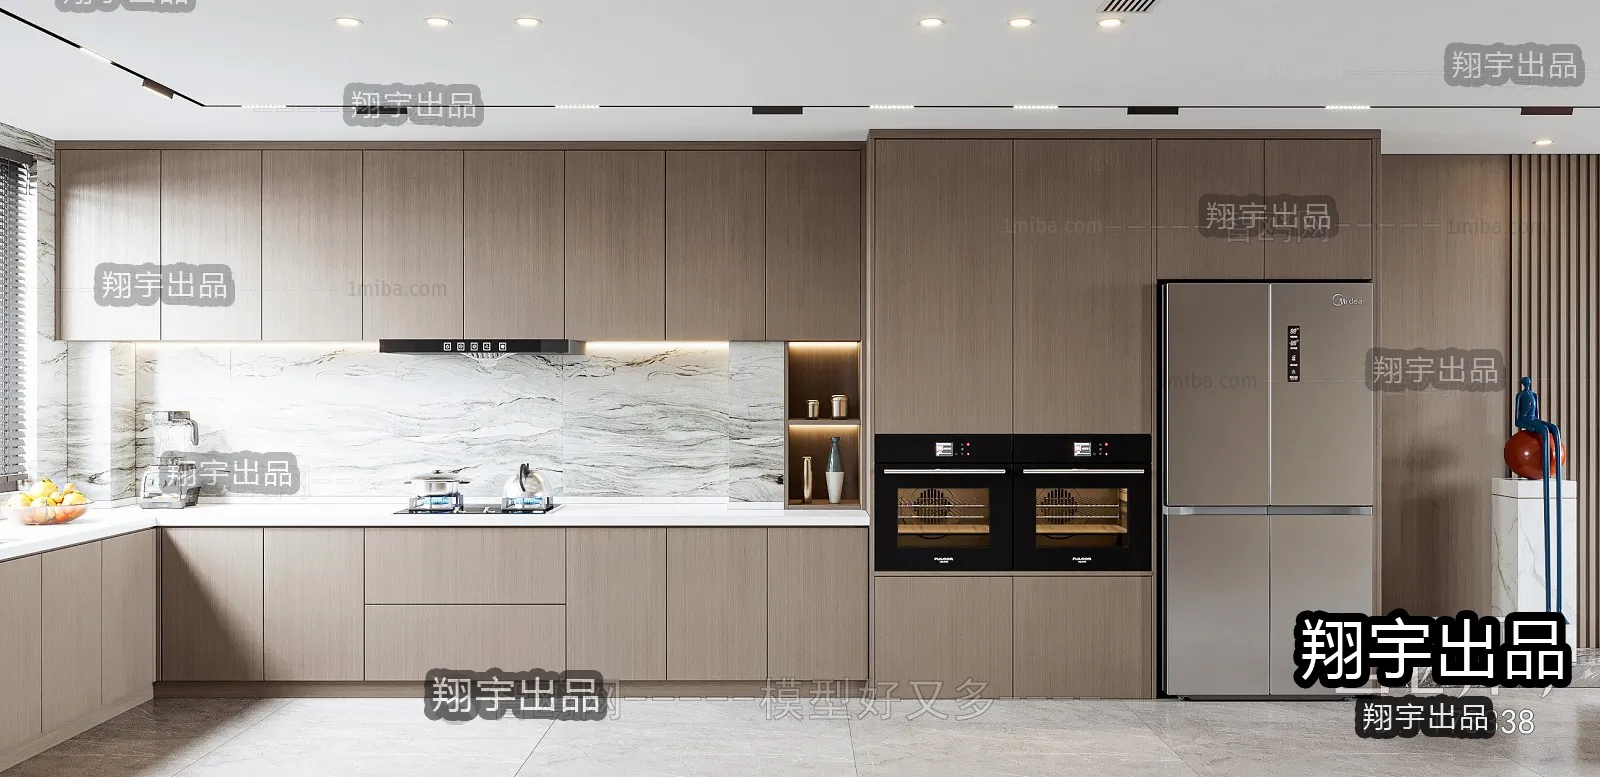 Kitchen – Modern Interior Design – 3D Models – 004